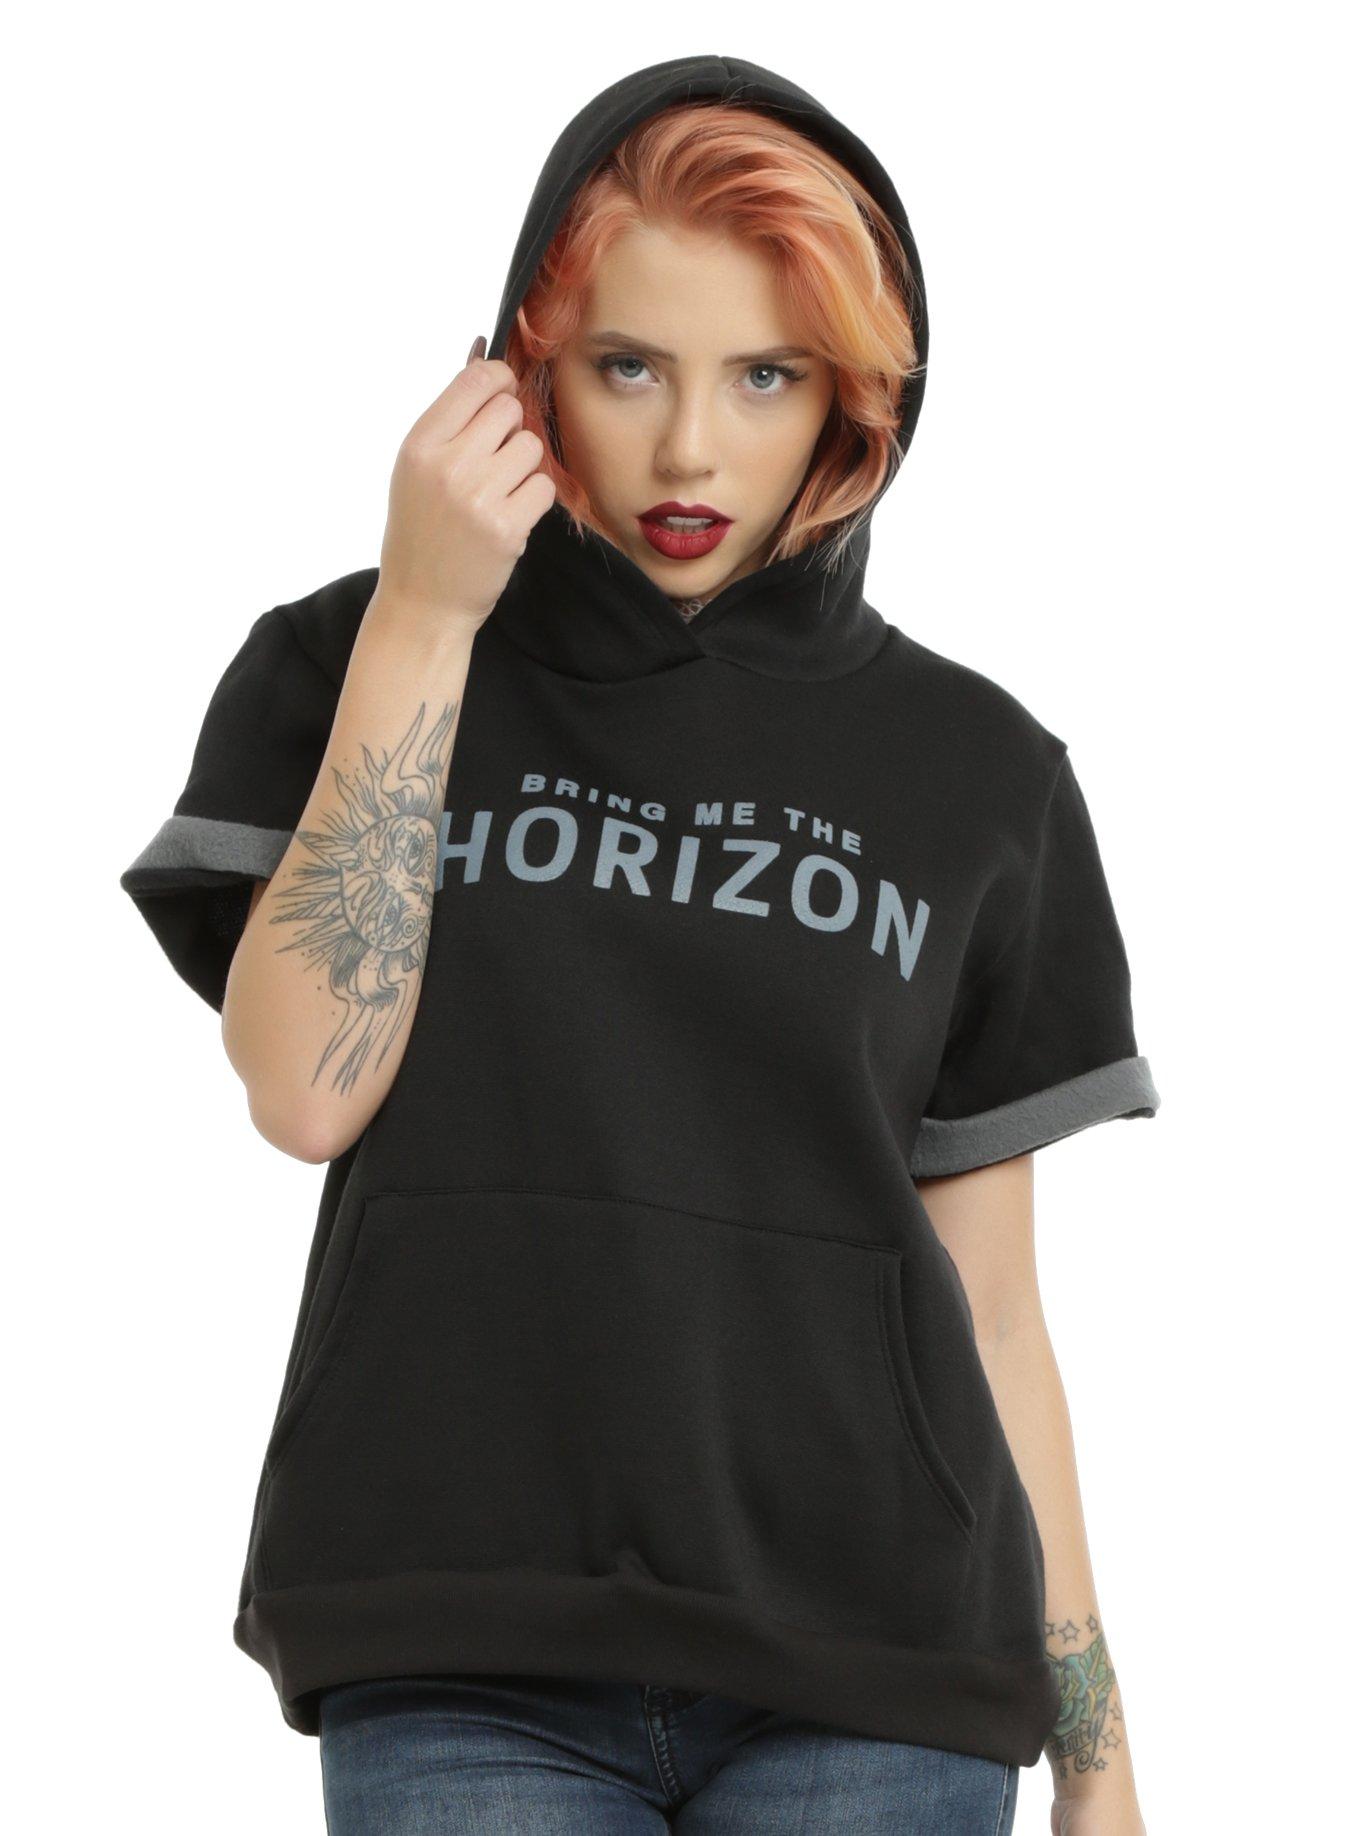 Bring Me The Horizon Doomed Girls Short-Sleeved Hoodie, BLACK, hi-res